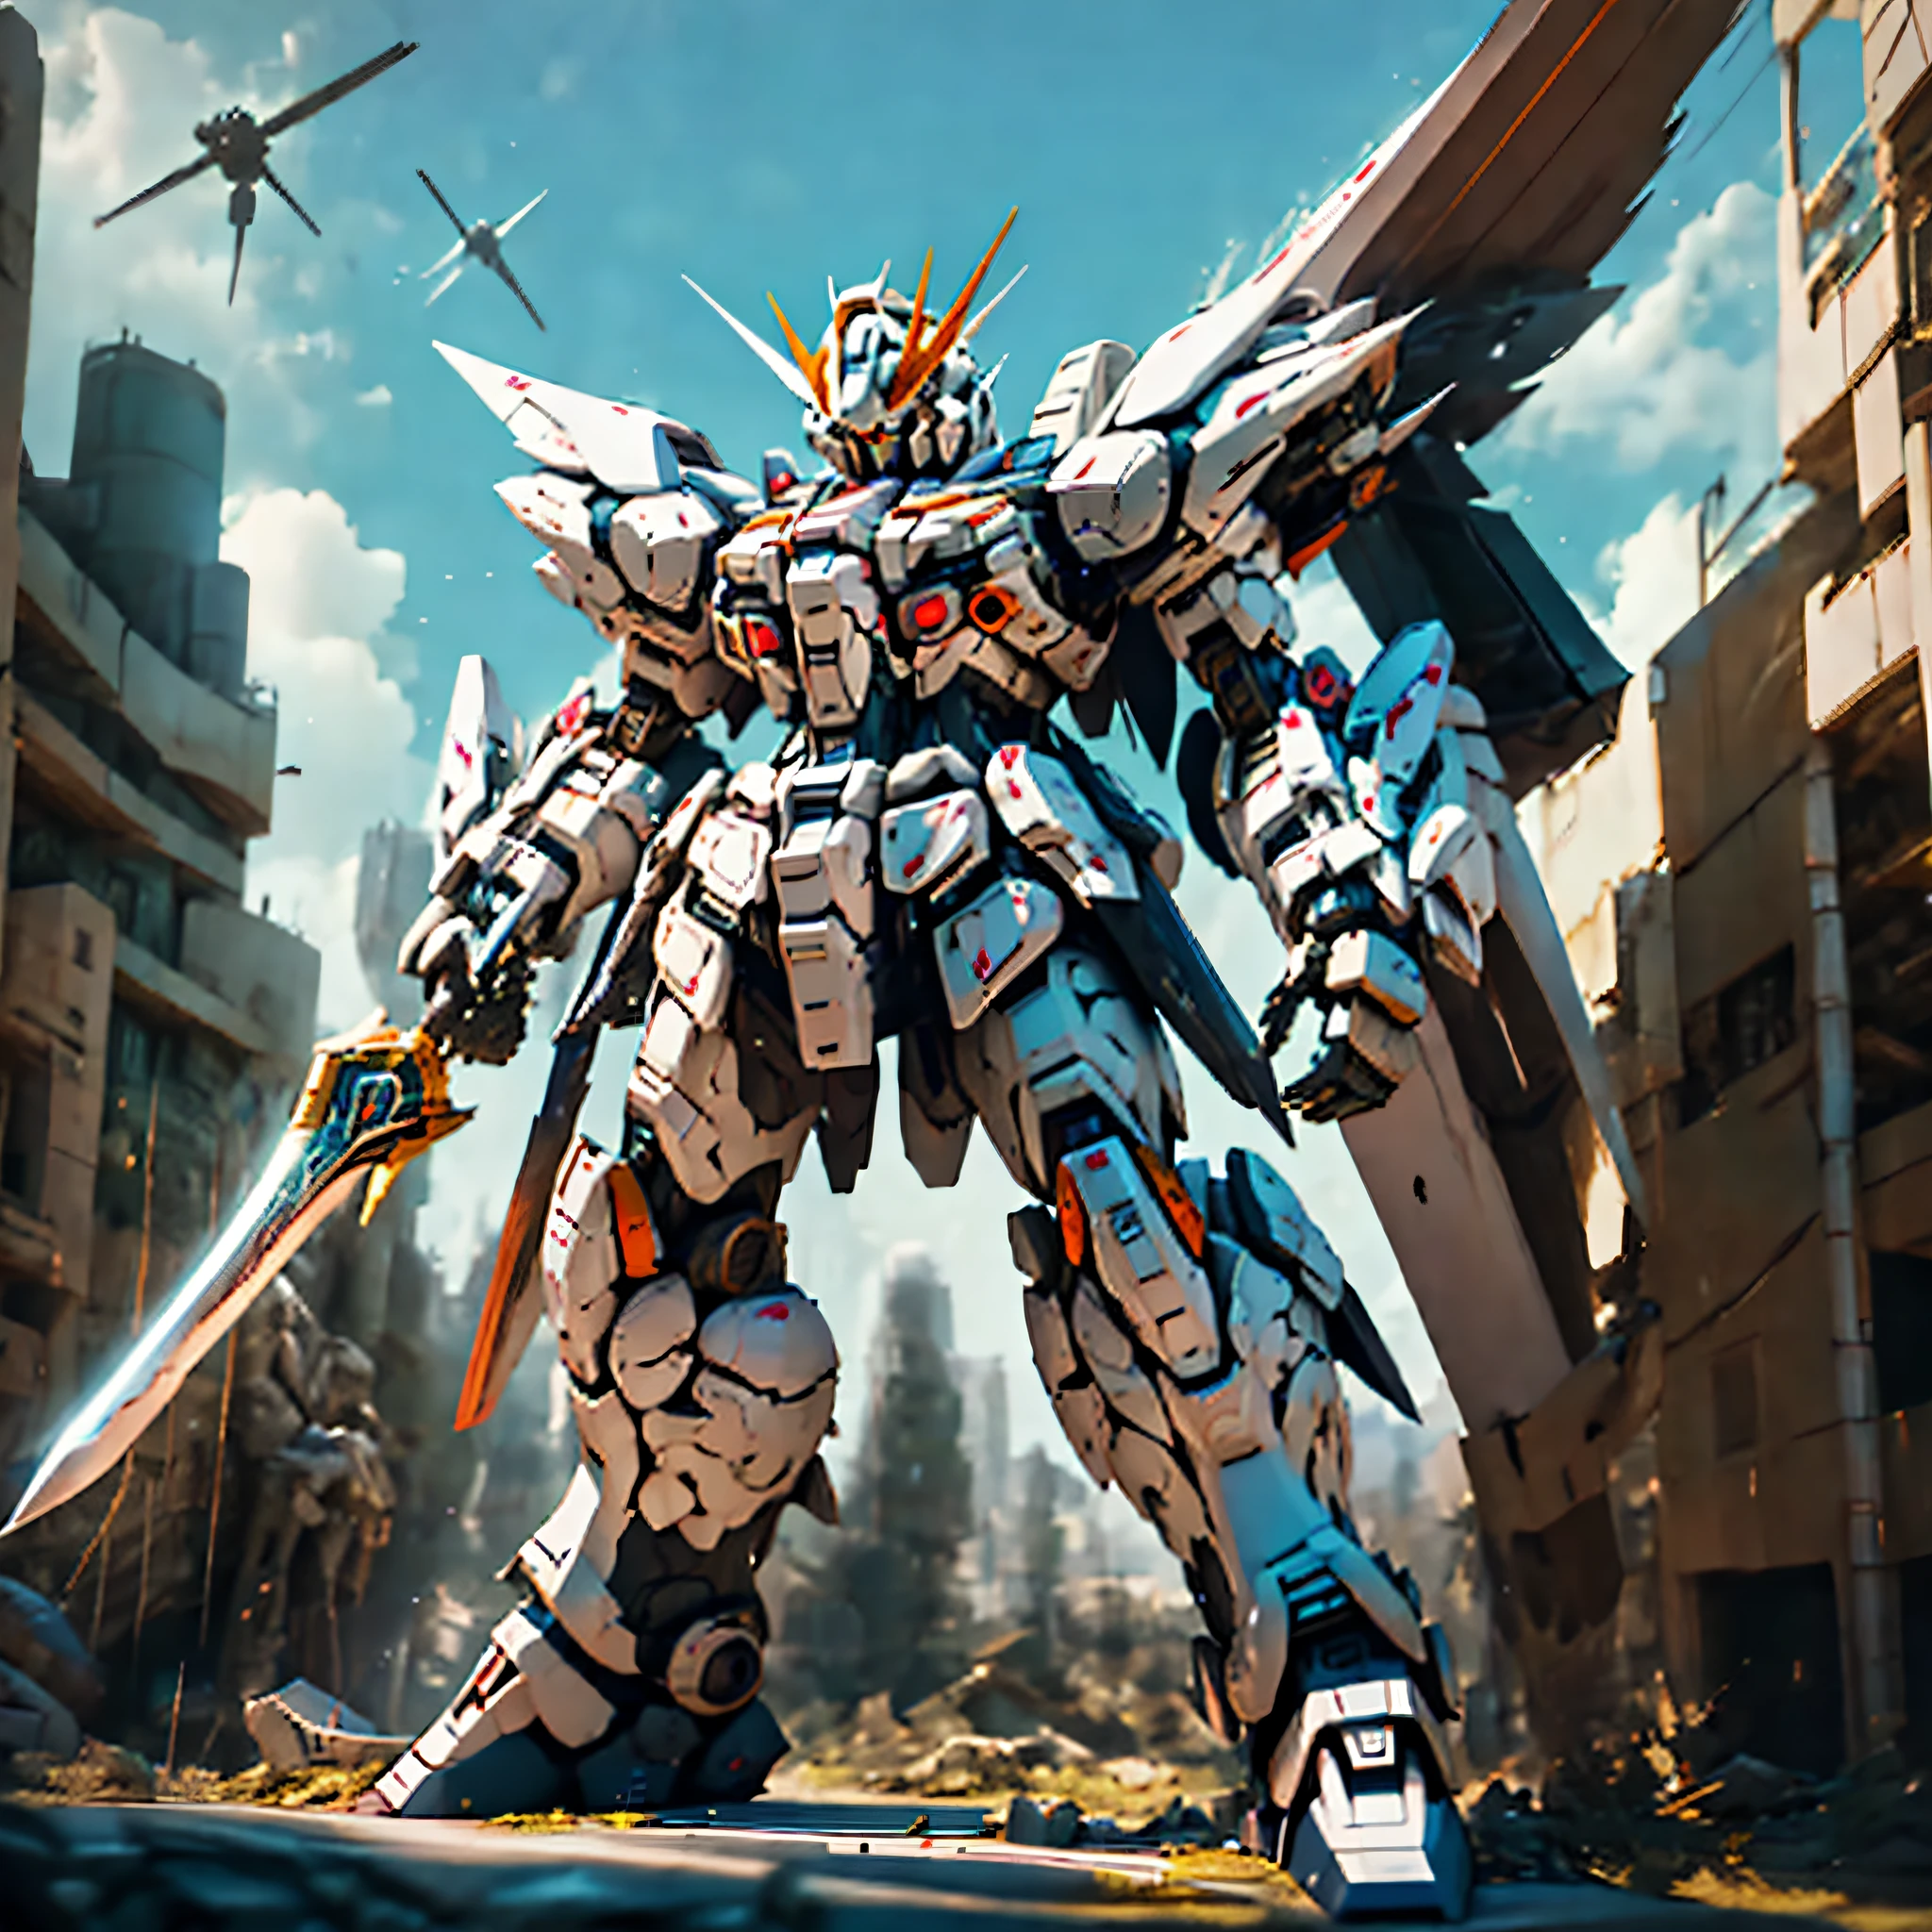 Estatua de Arakhi，Un gran robot con una espada, on a GUNDAM, GUNDAM ROBOT, GUNDAM is windmill shaped, GUNDAM style, un robot mecha grande de anime, traje móvil, GUNDAM, Gundam extremo, tomada con cámara sony a7r, traje móvil Gundam, GUNPLA, mecha gigante de anime, armadura gundam